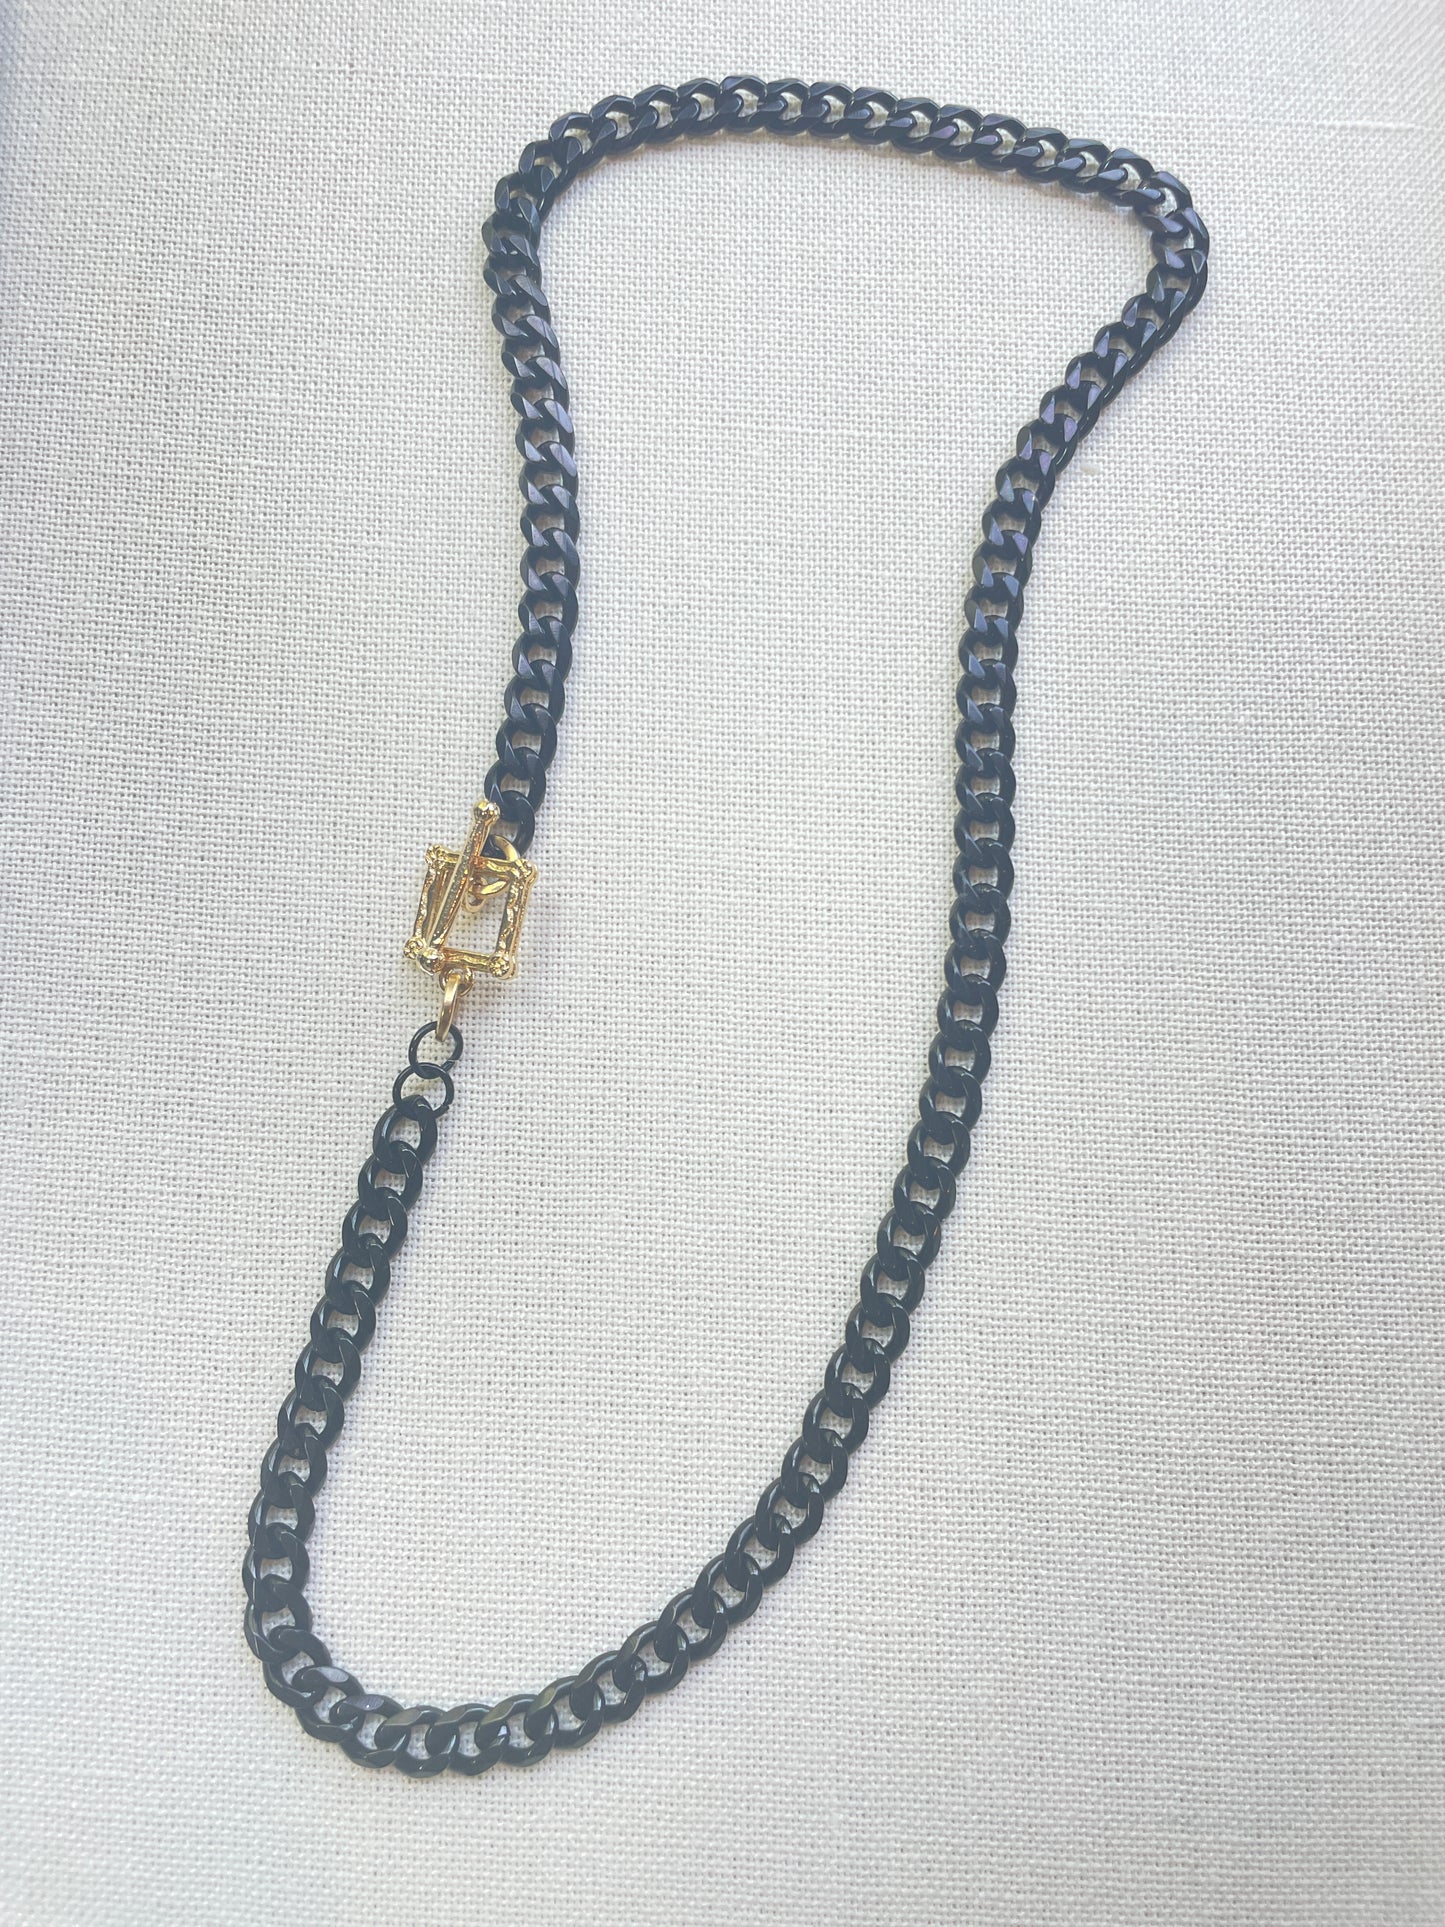 Black and Gold Chunky Necklace/Bracelet